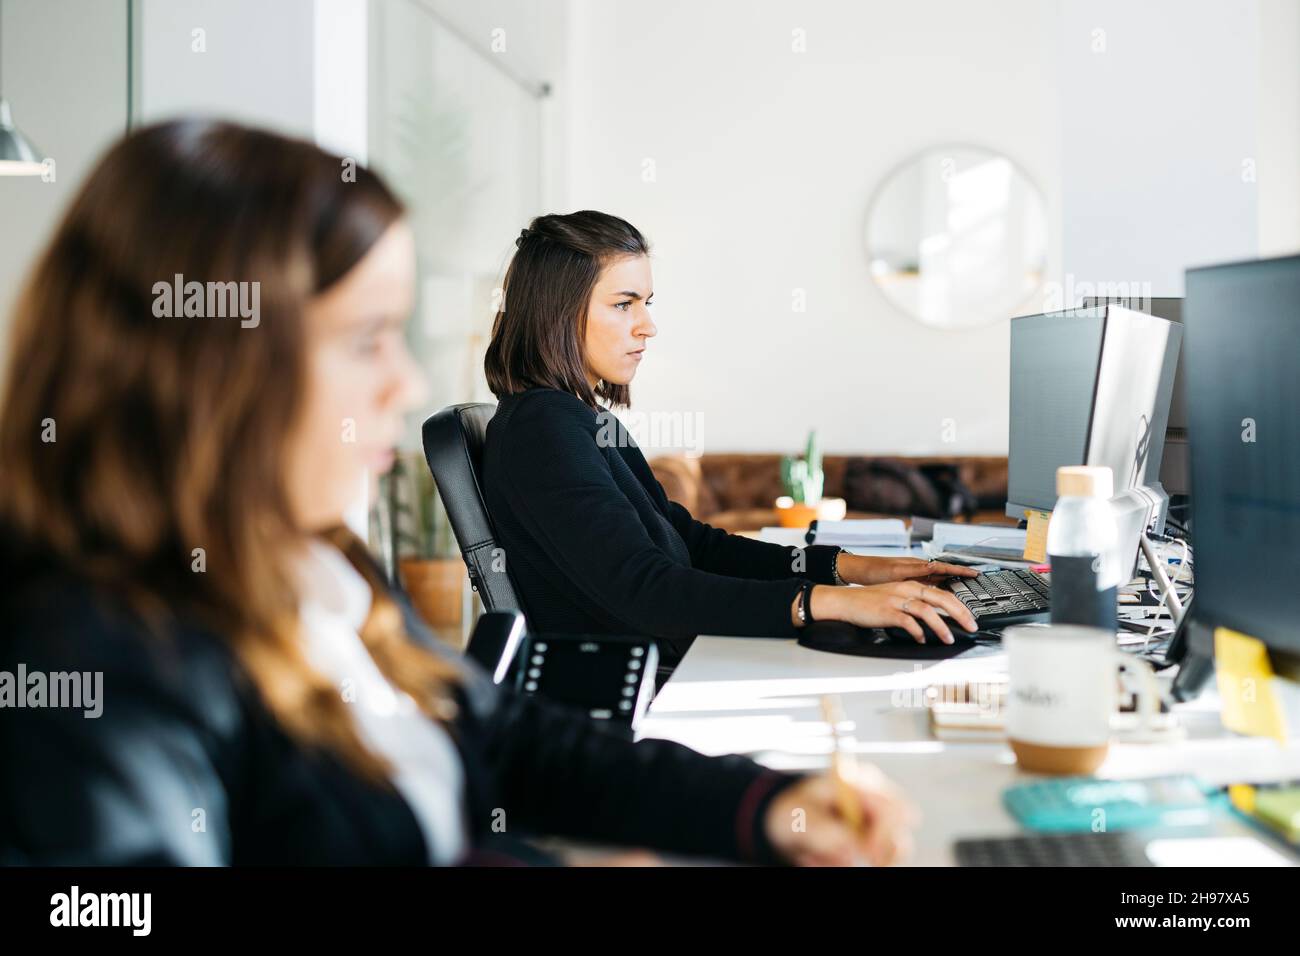 Femme assise sur un bureau et travaillant avec un ordinateur dans un bureau Banque D'Images